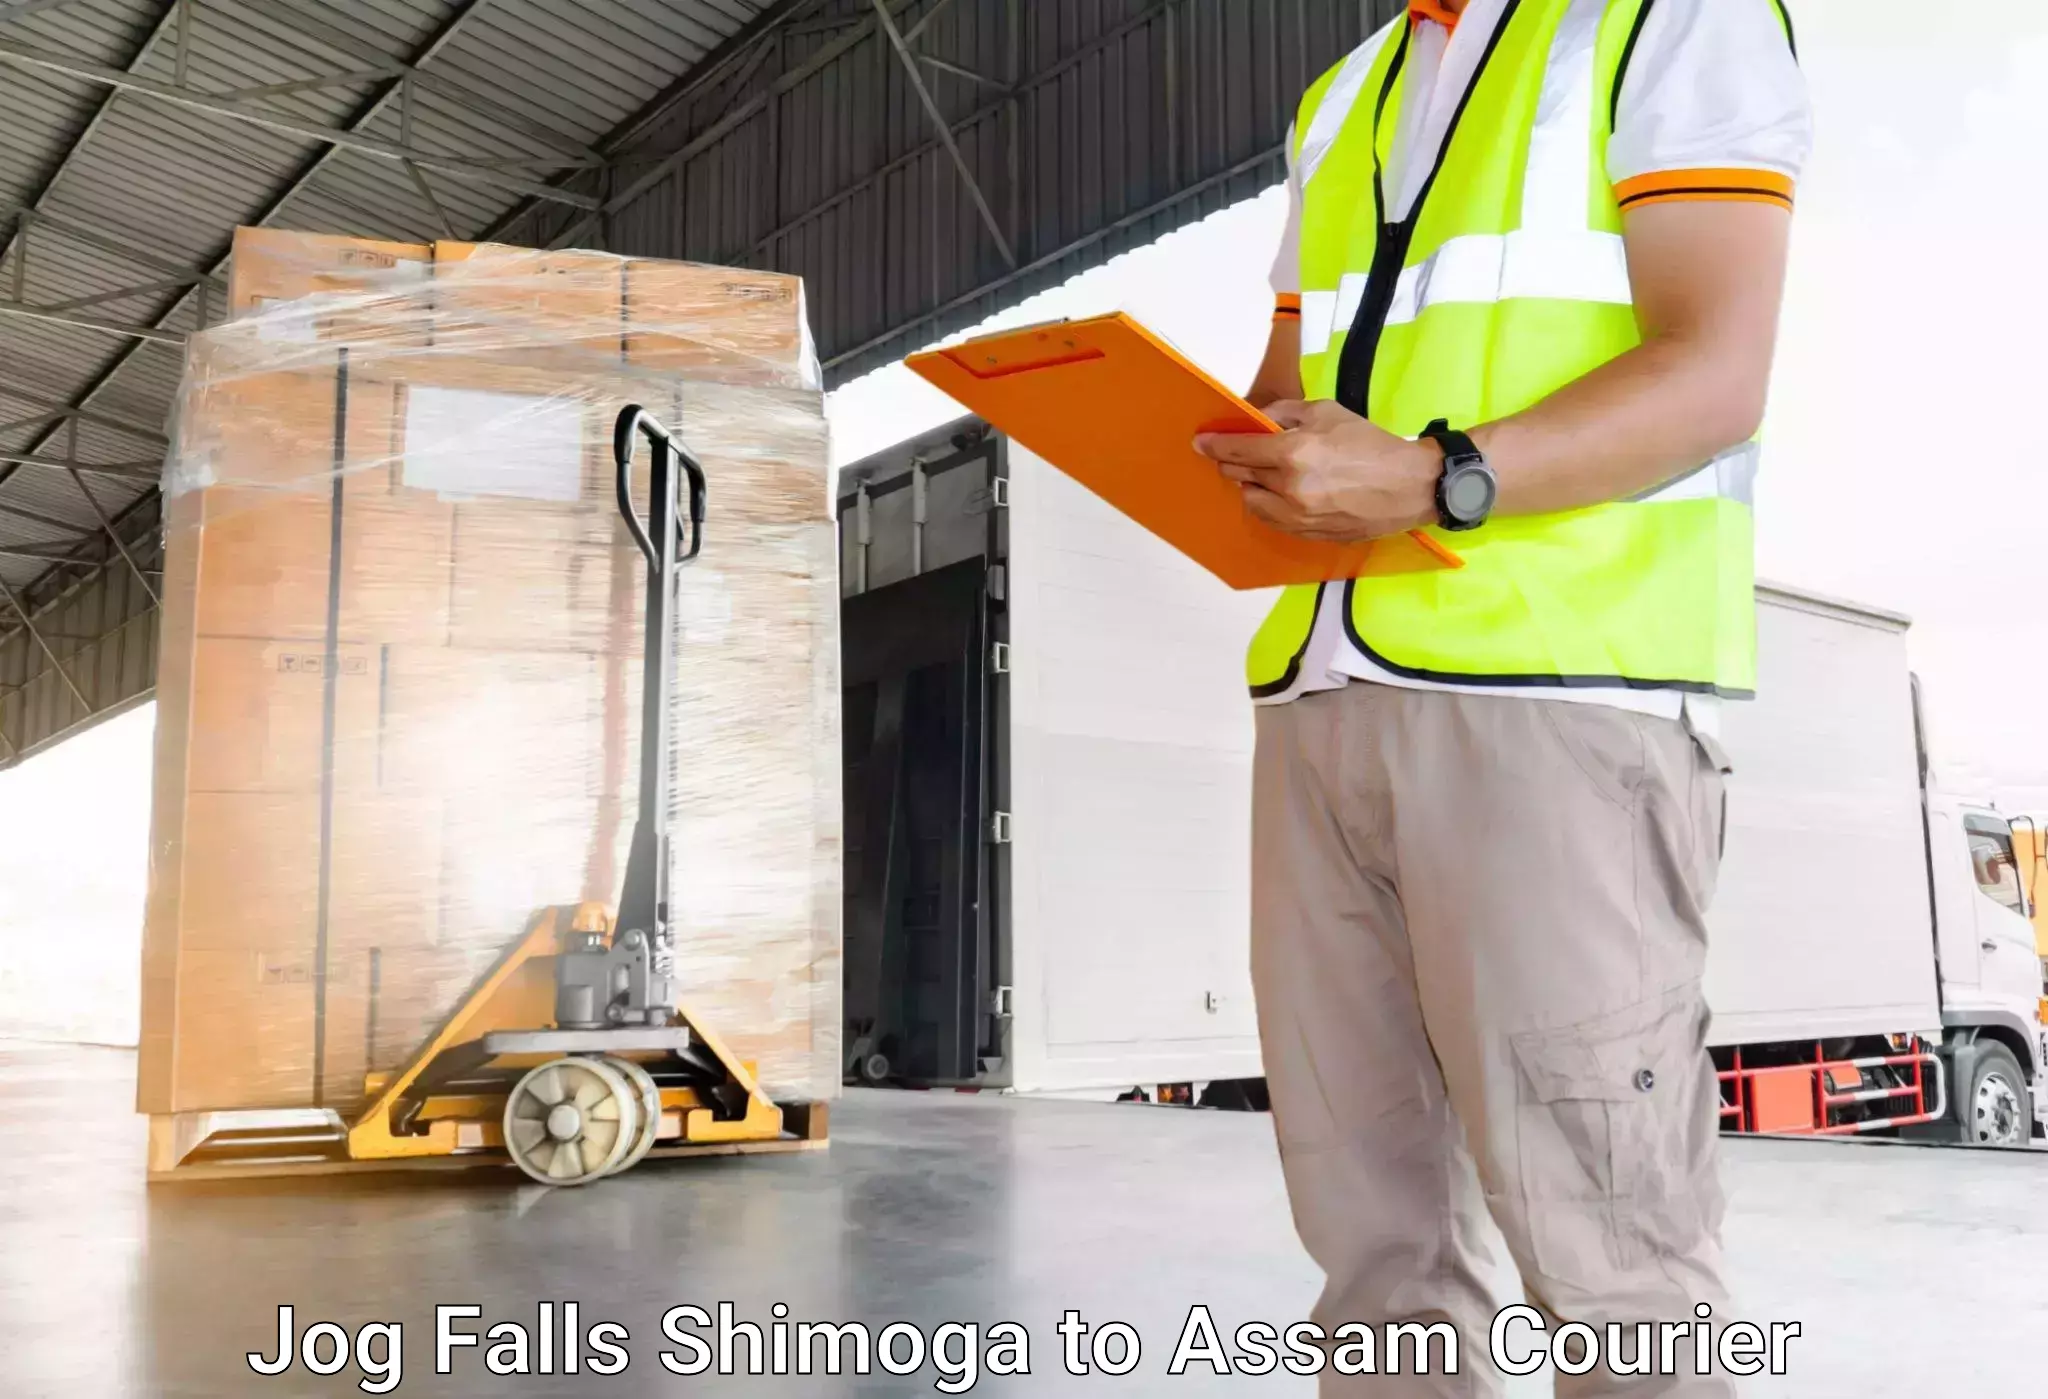 Luggage shipment specialists Jog Falls Shimoga to Kabuganj